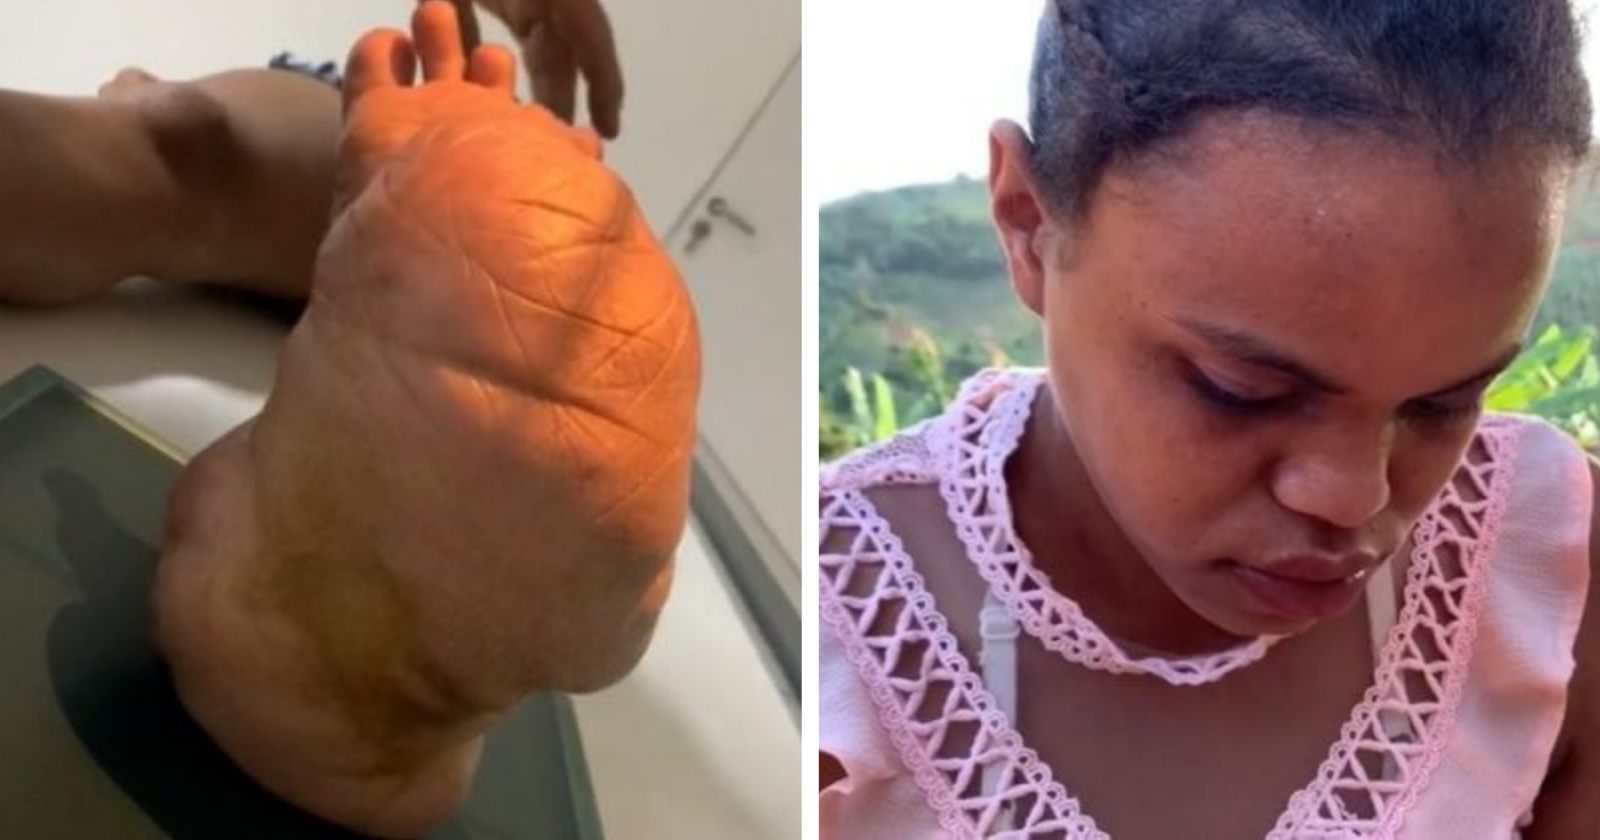 Internautas fazem surpresa acolhedora para garota que sofre bullyng por causa de tumor no pé